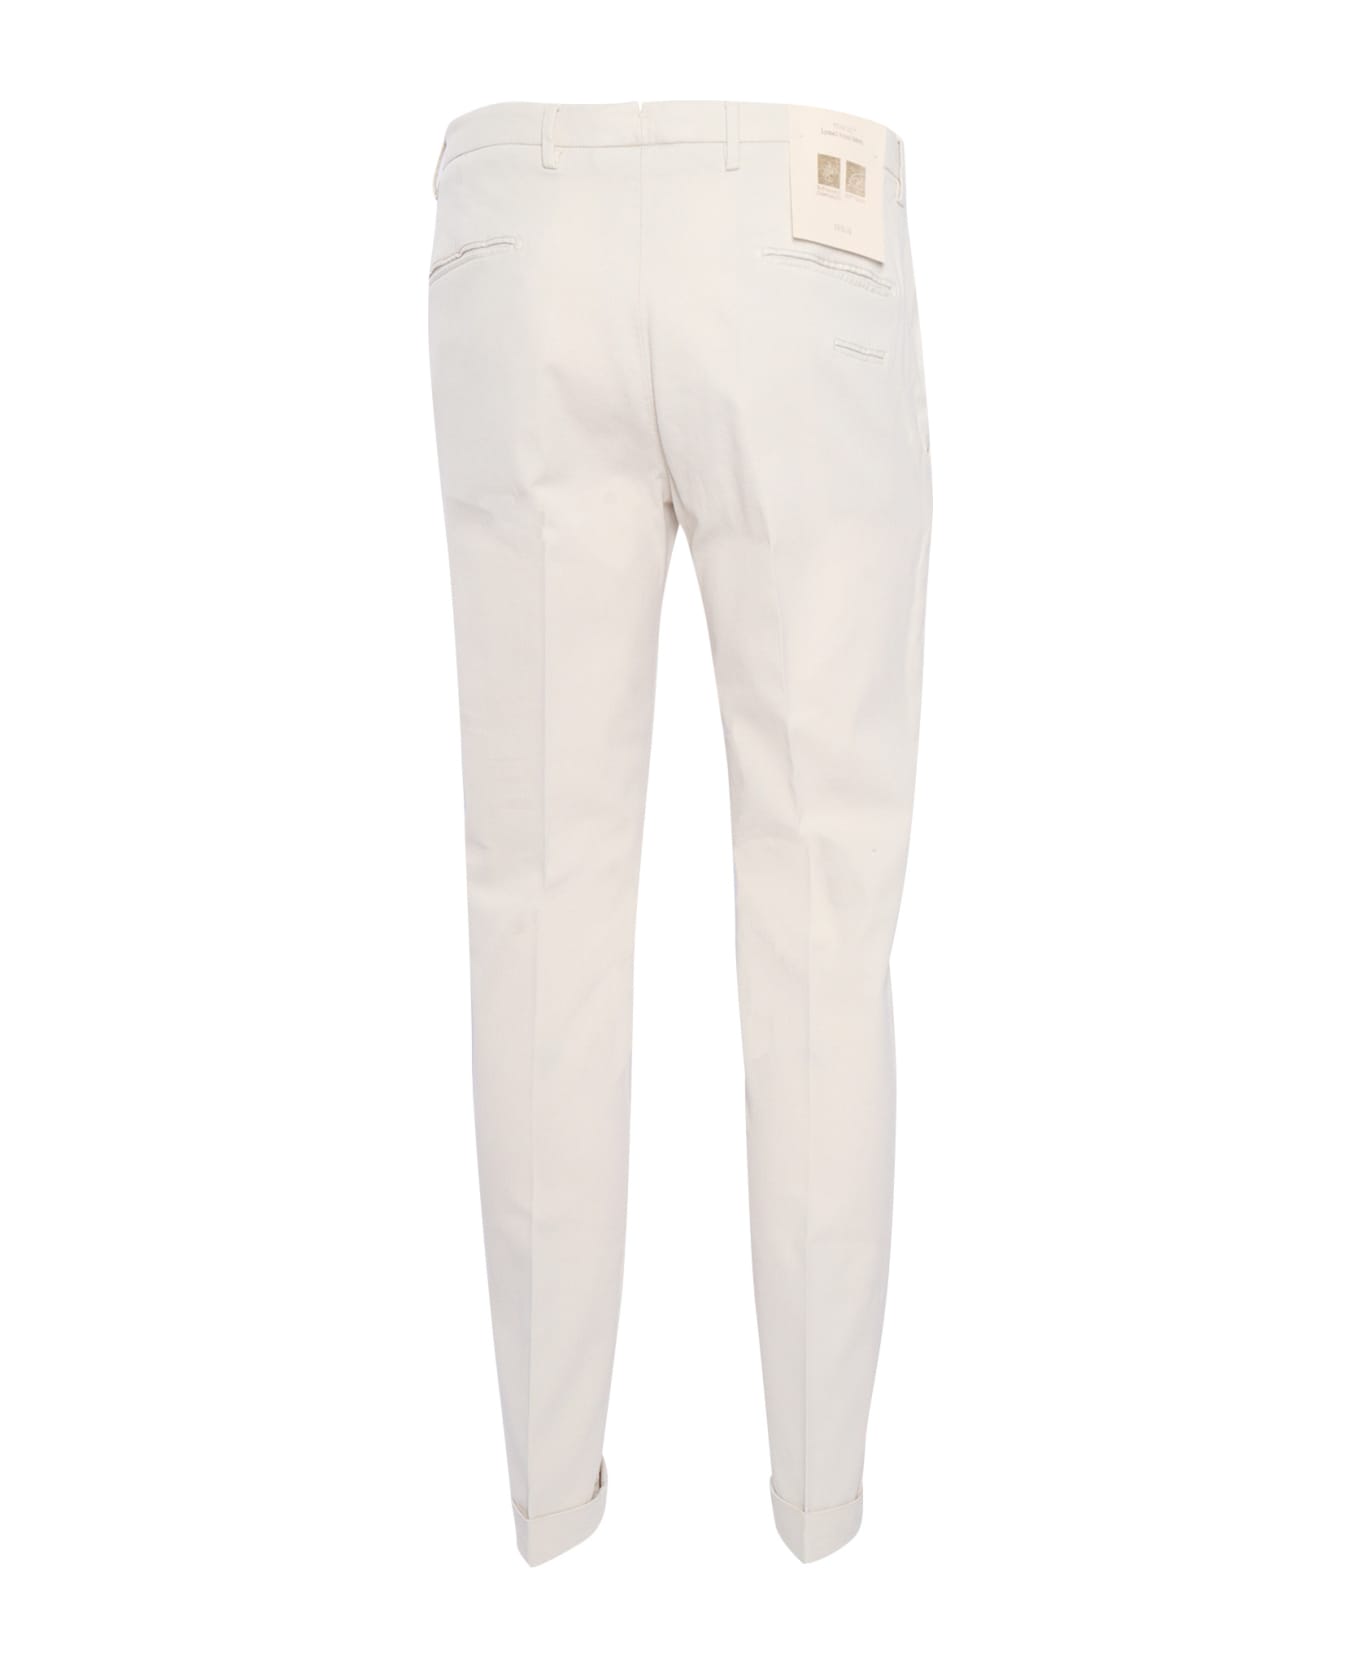 Briglia 1949 White Trousers - BEIGE